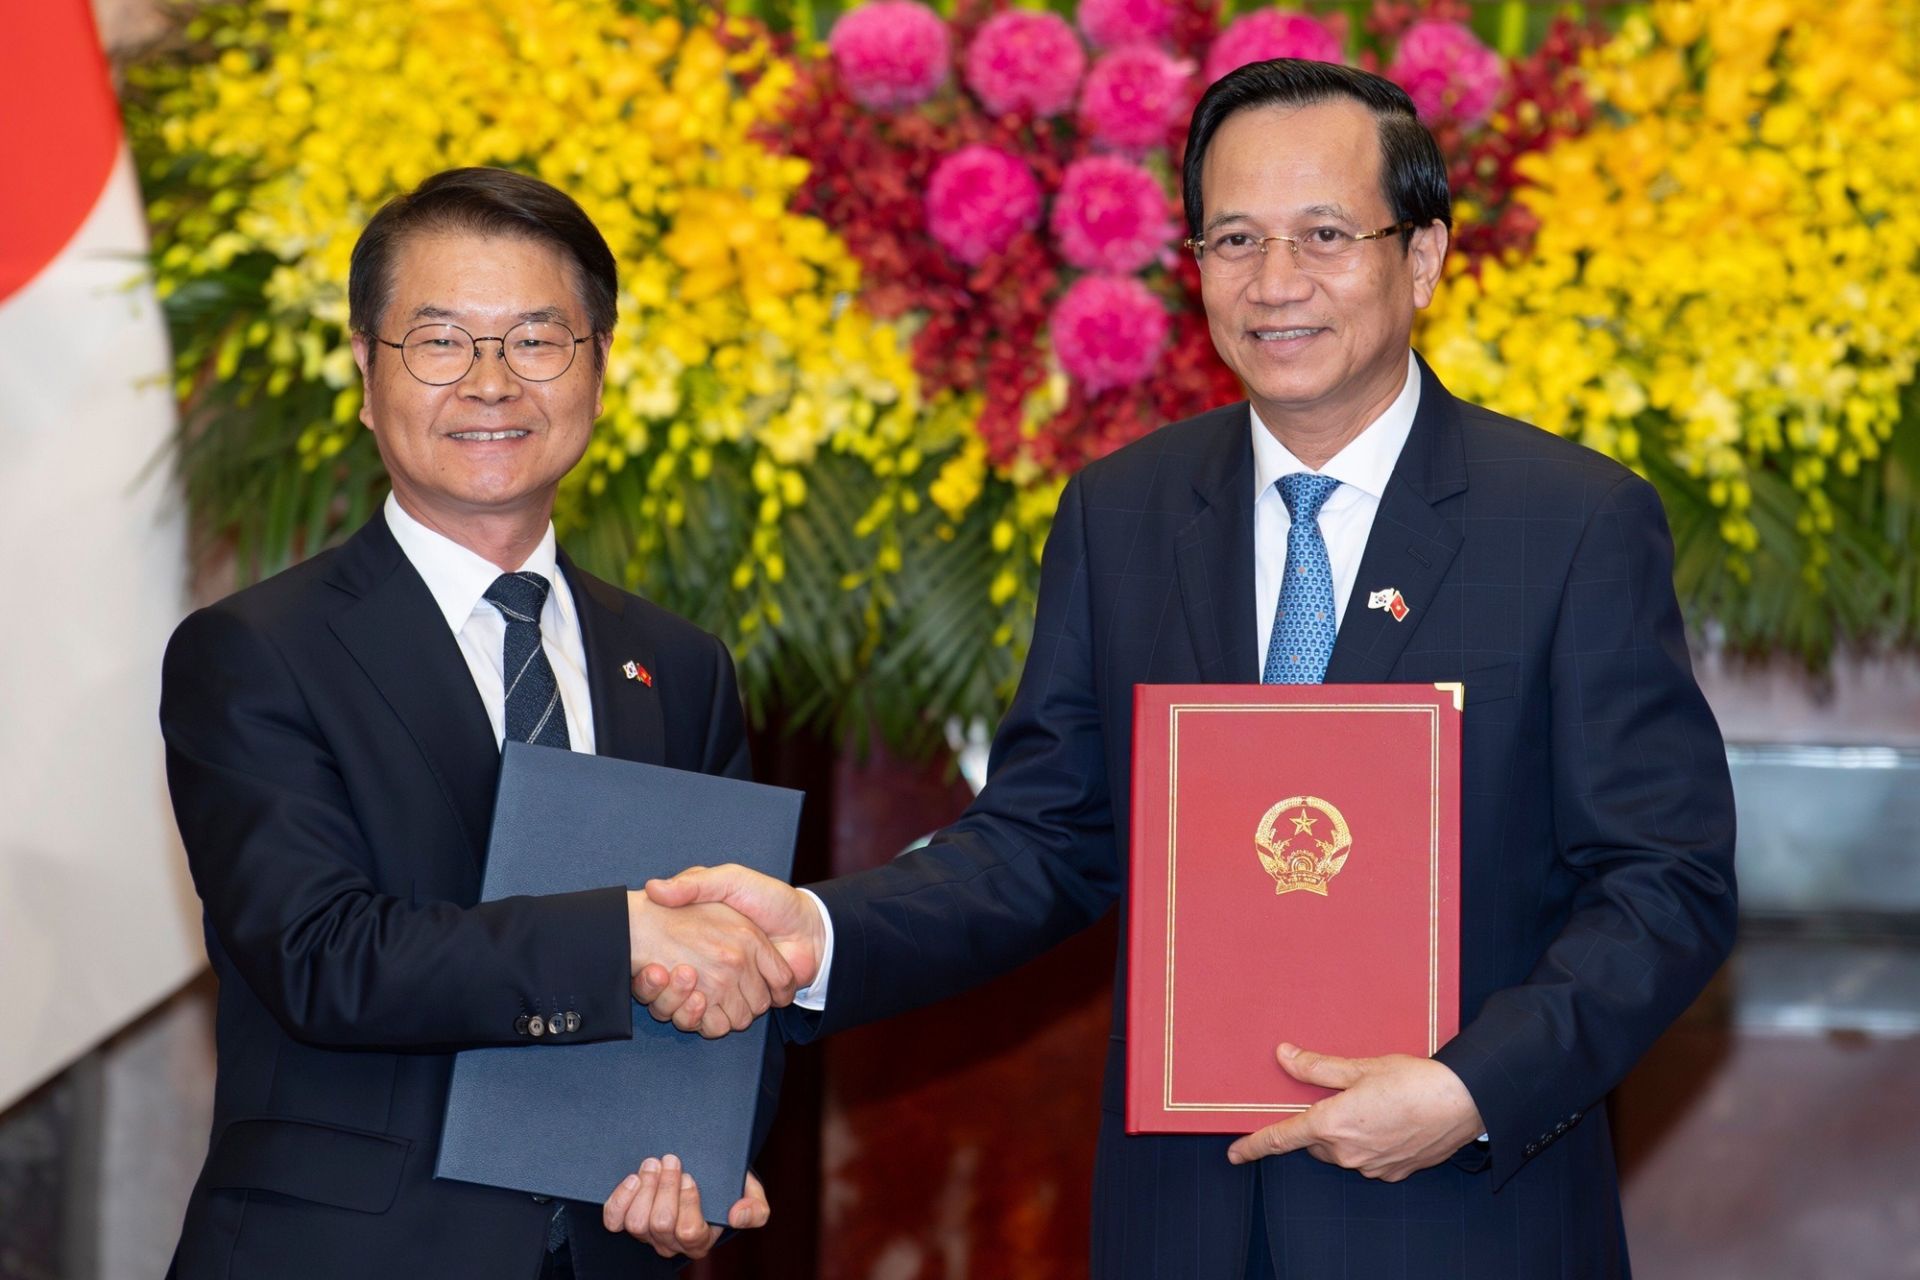 Bộ trưởng Bộ LĐ-TB-XH Đào Ngọc Dung và Bộ trưởng Việc làm và Lao động Hàn Quốc Lee Jung Sik ký và trao Bản ghi nhớ (MOU) về phái cử và tiếp nhận lao động Việt Nam sang làm việc tại Hàn Quốc